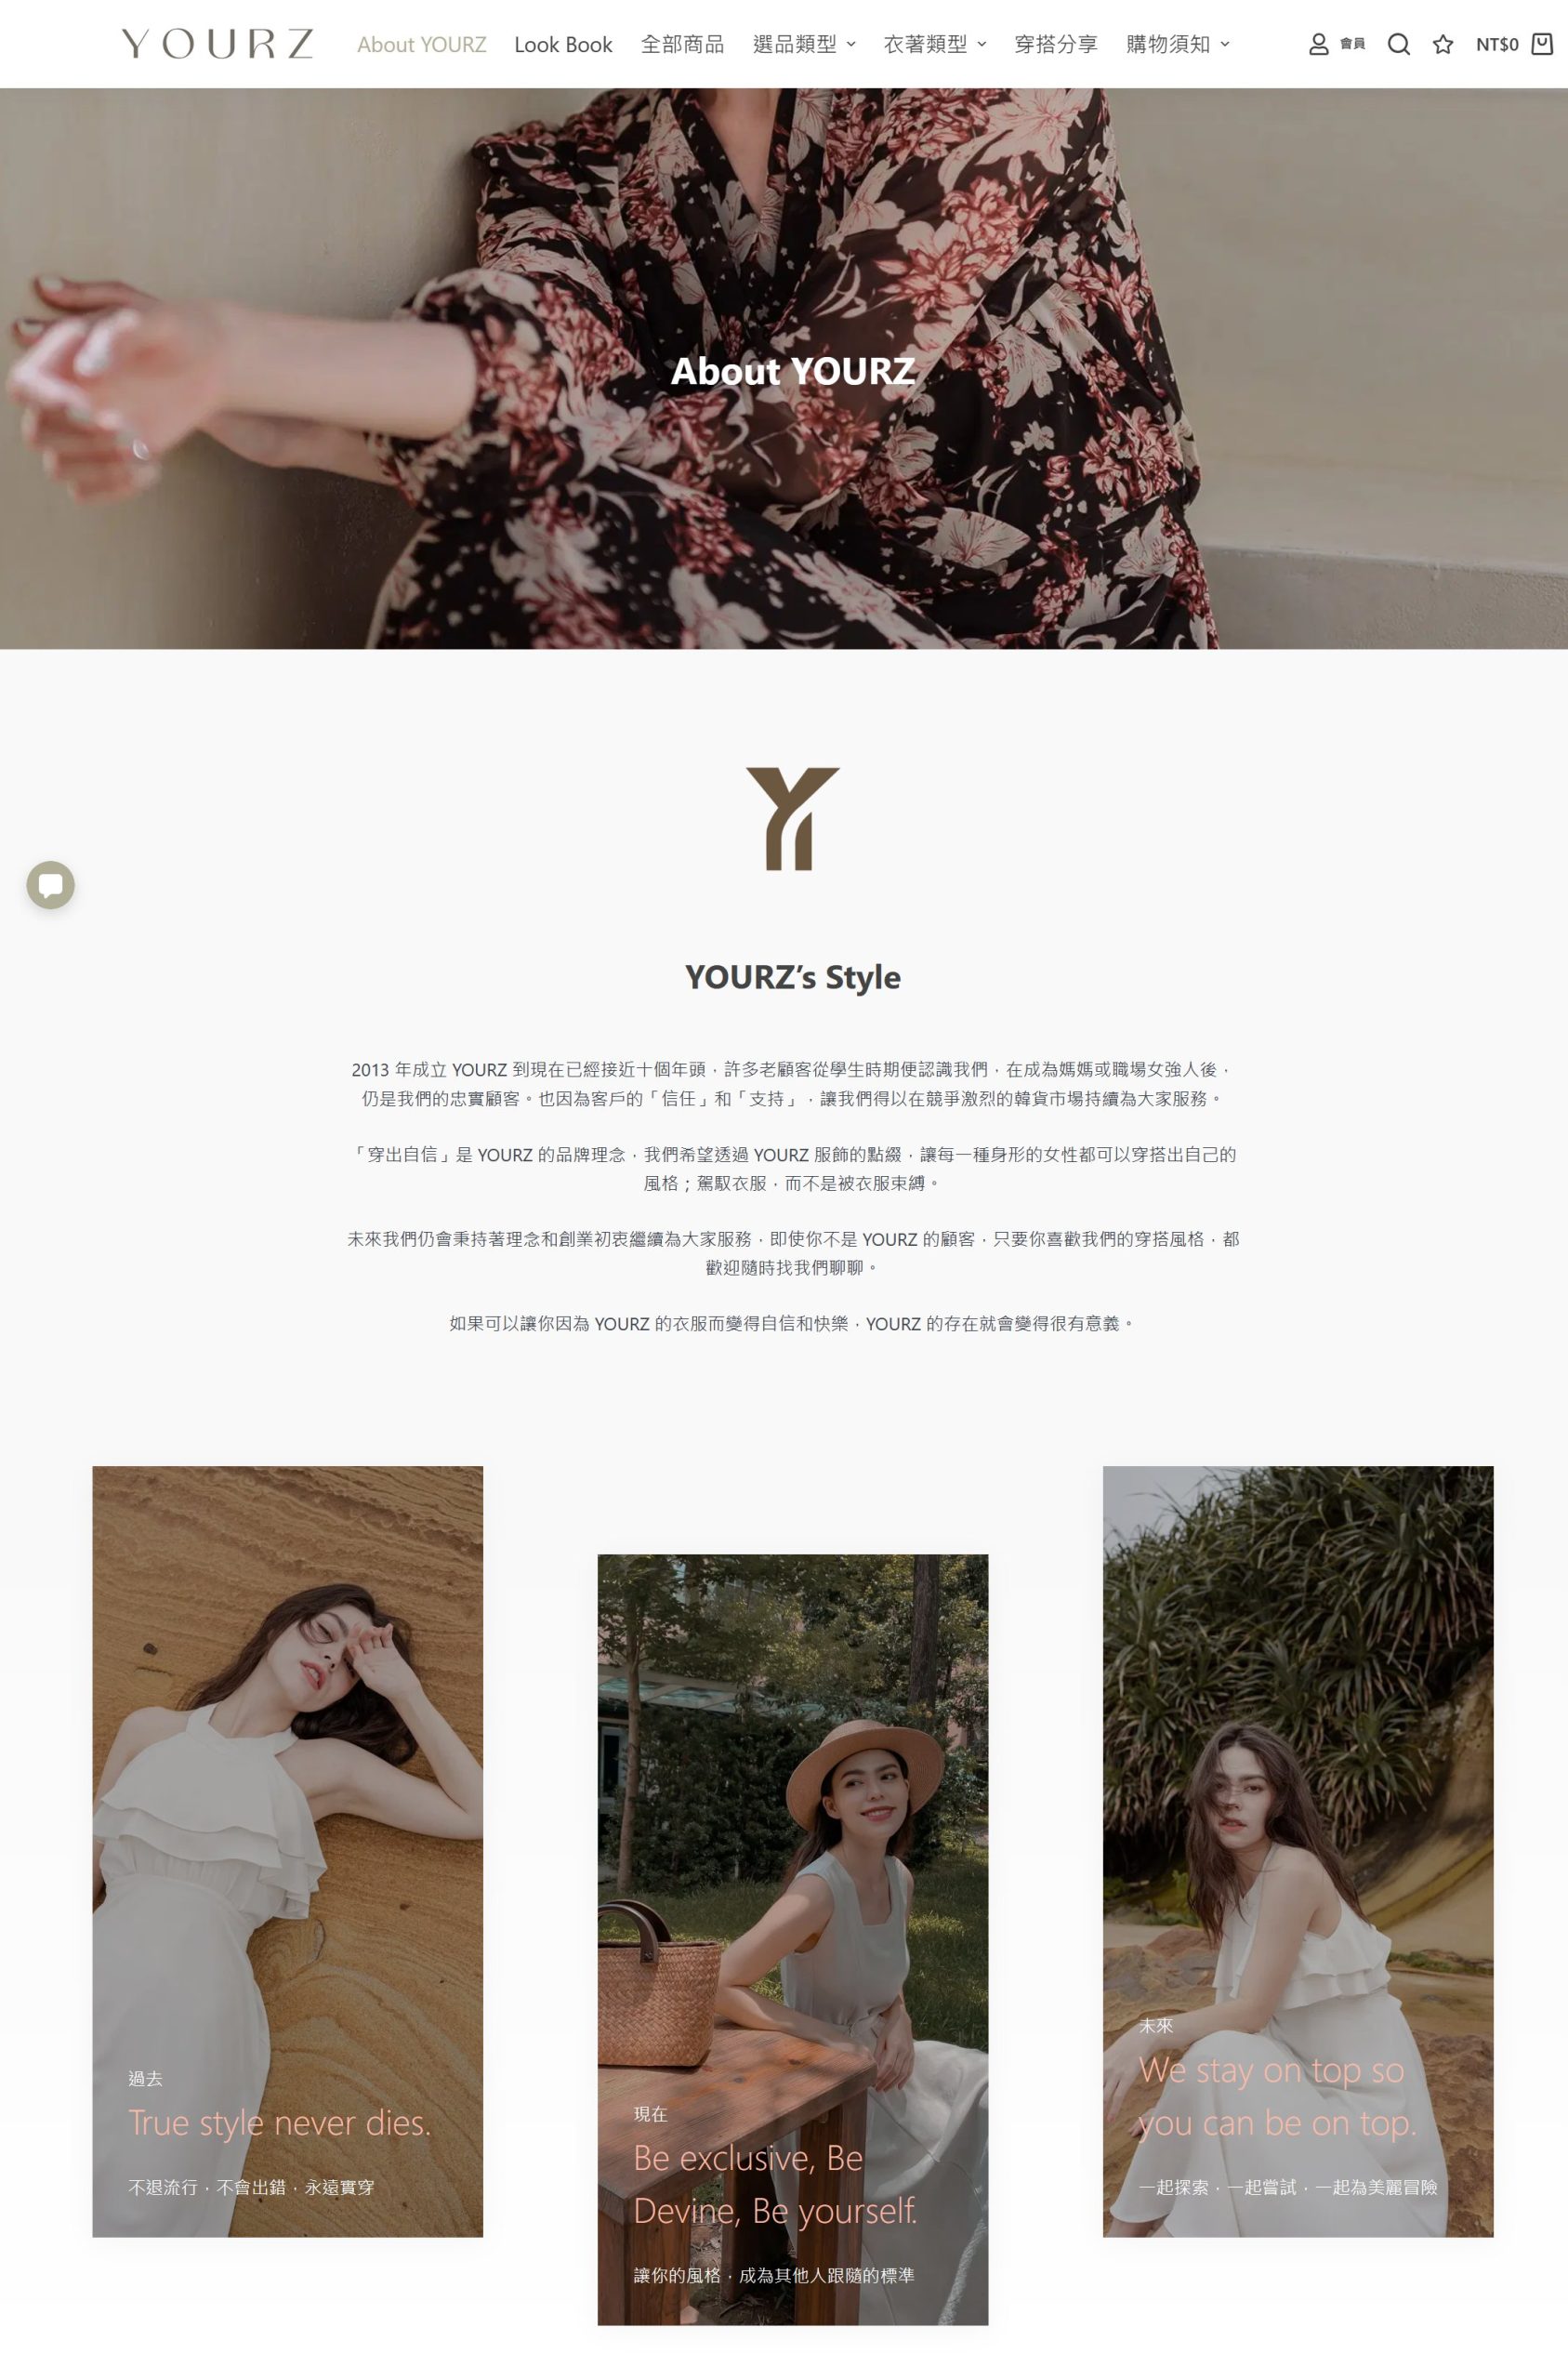 YOURZ 韓國流行服飾 - 關於頁面之品牌形象視覺呈現 & 視差捲動/動態漸變載入效果